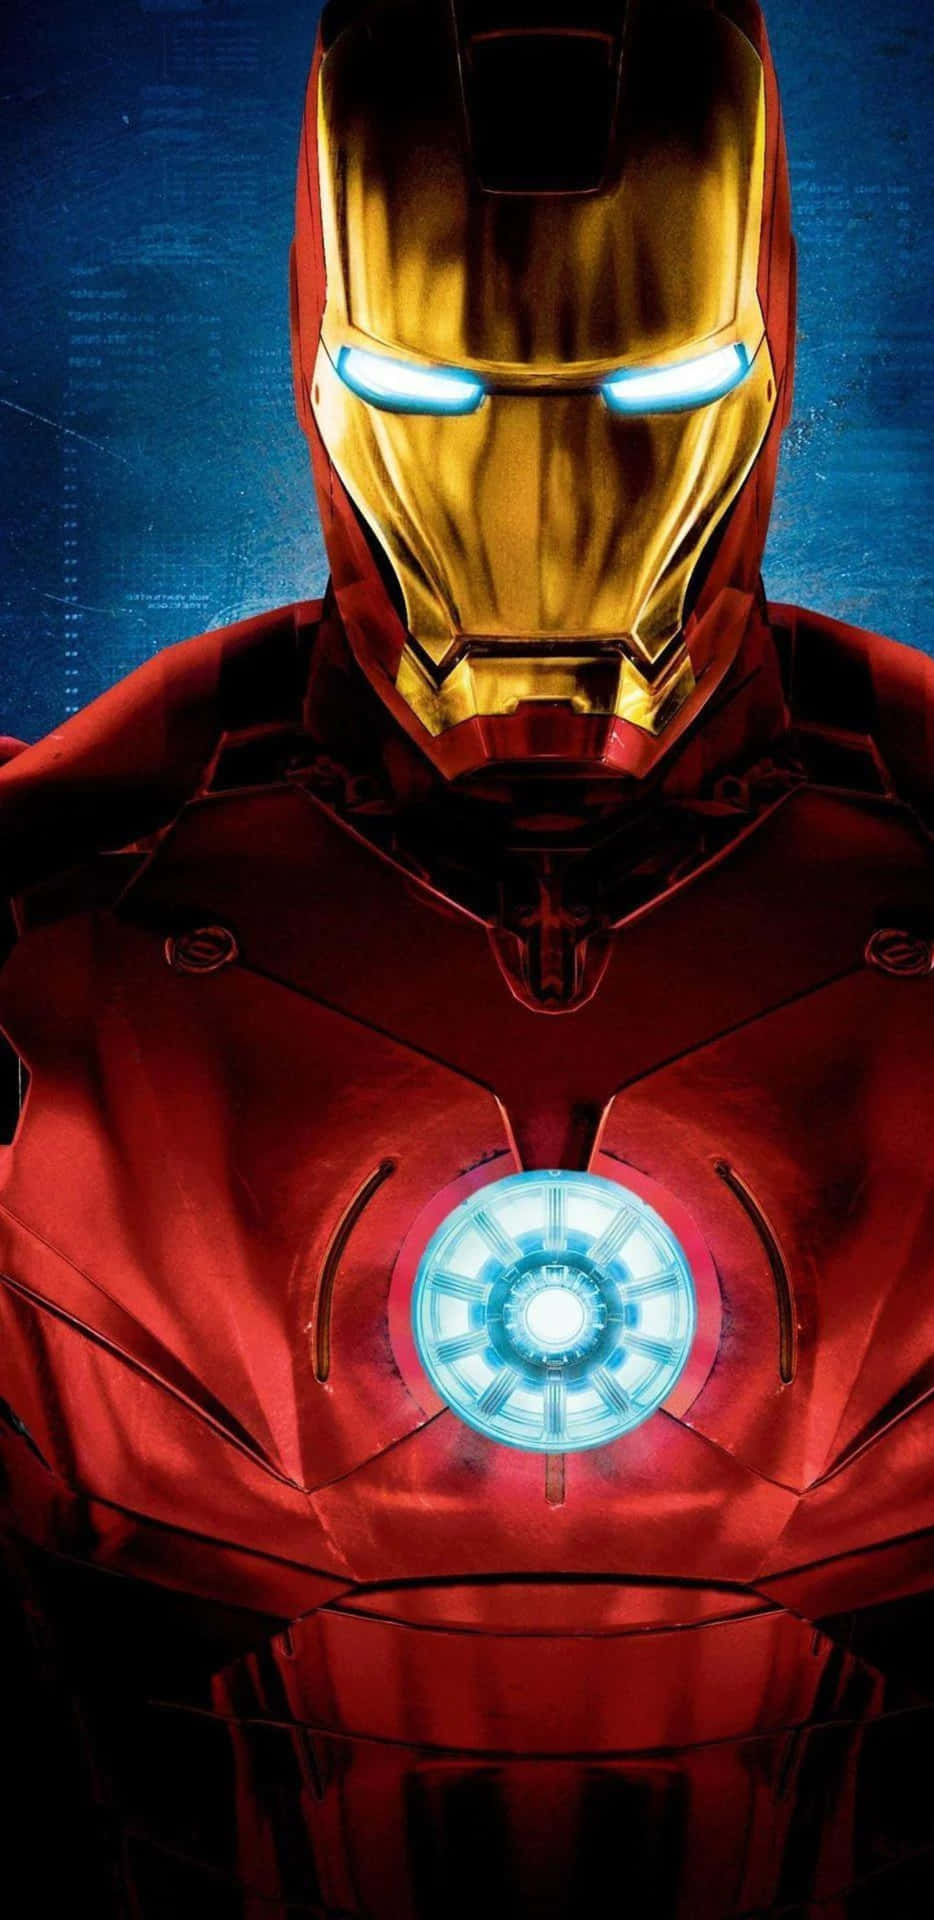 Fondode Pantalla Del Pixel 3xl: Reactor De Arco Redondo De Iron Man